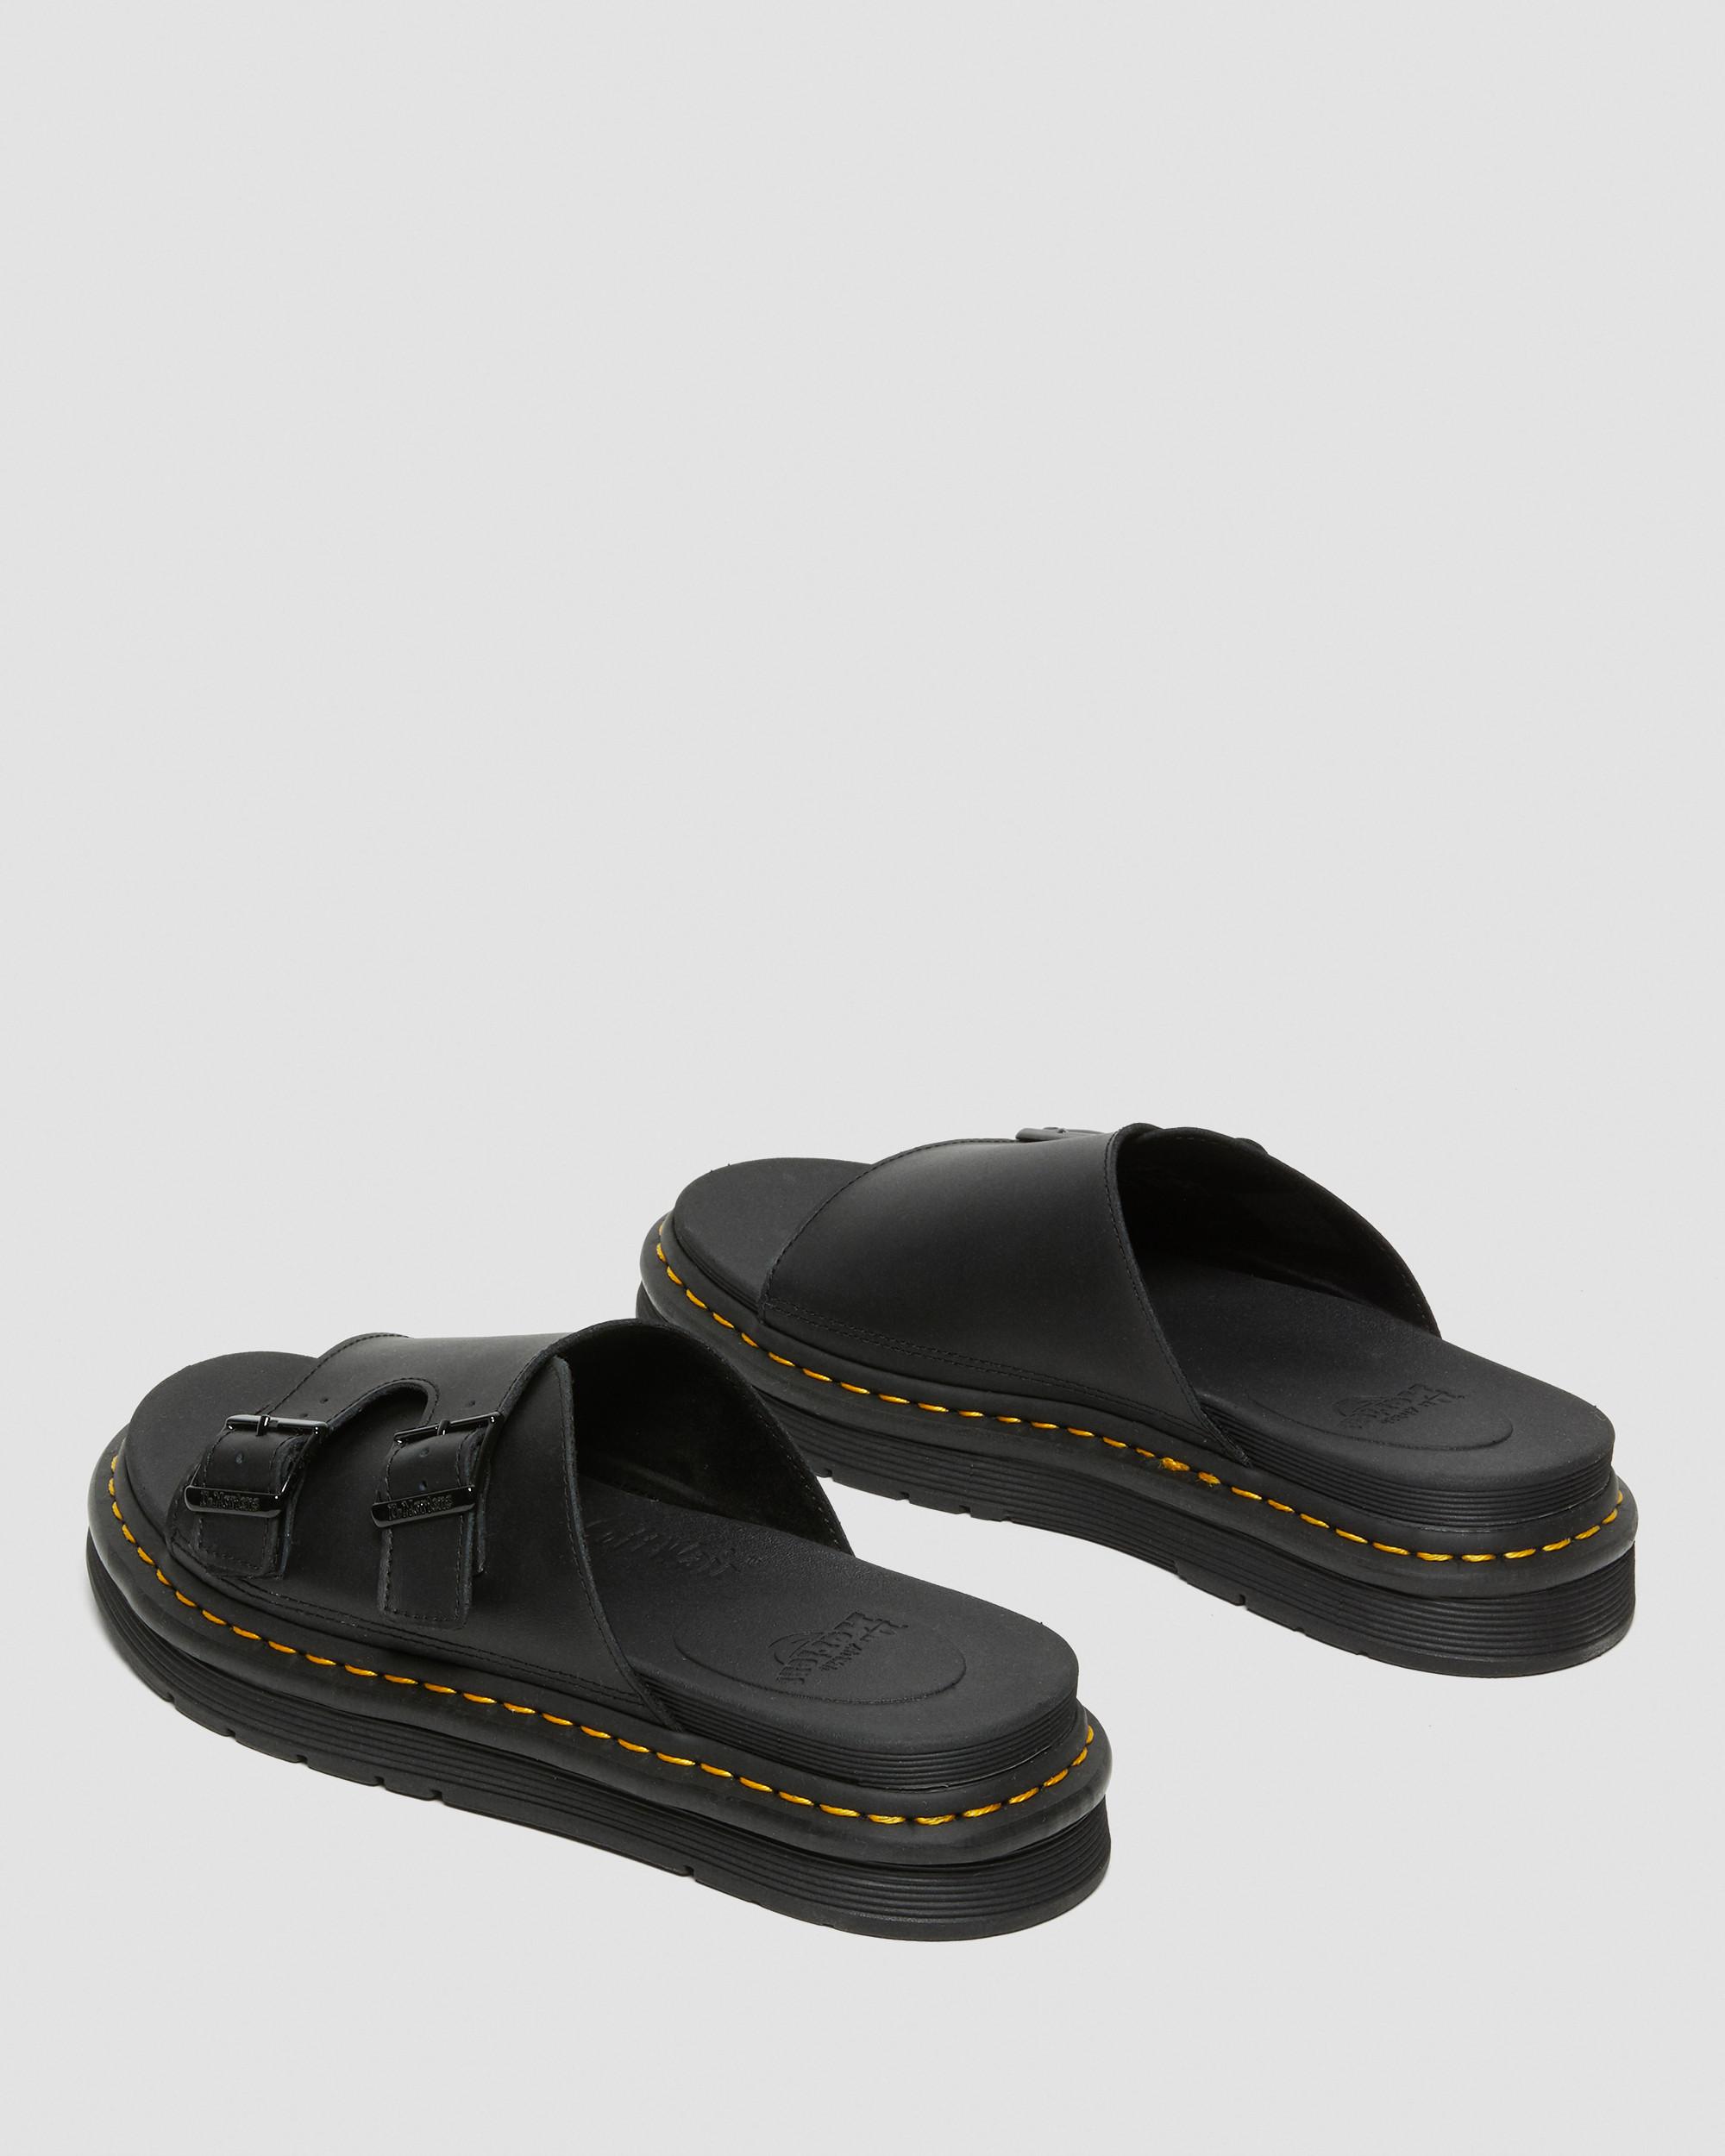 DR MARTENS Dax Men's Leather Slide Sandals